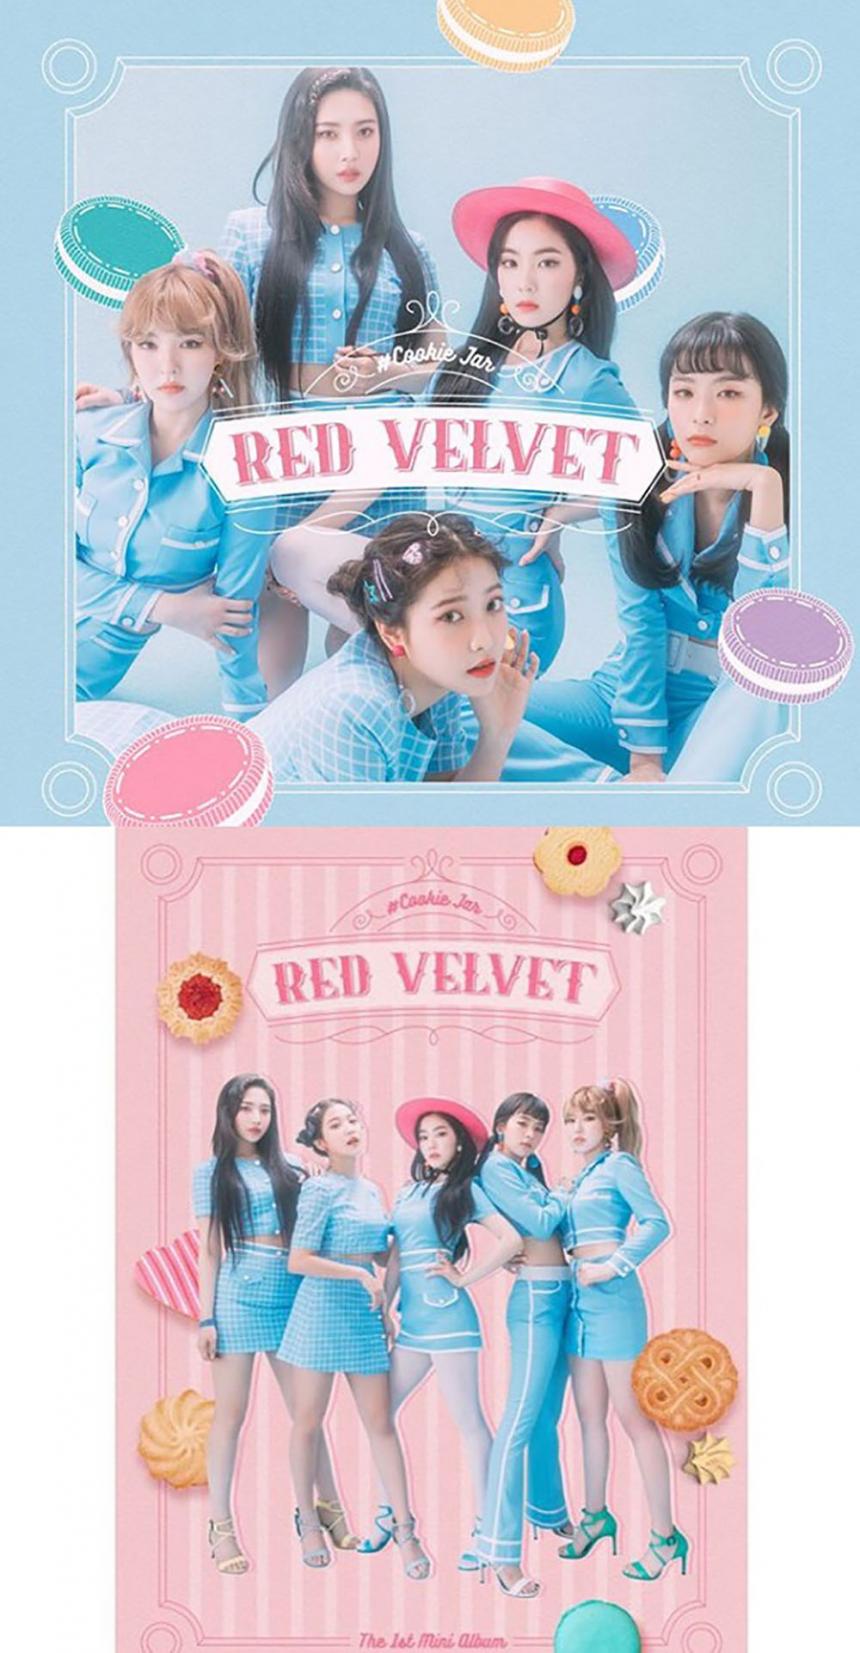 레드벨벳(Red Velvet) 공식 인스타그램